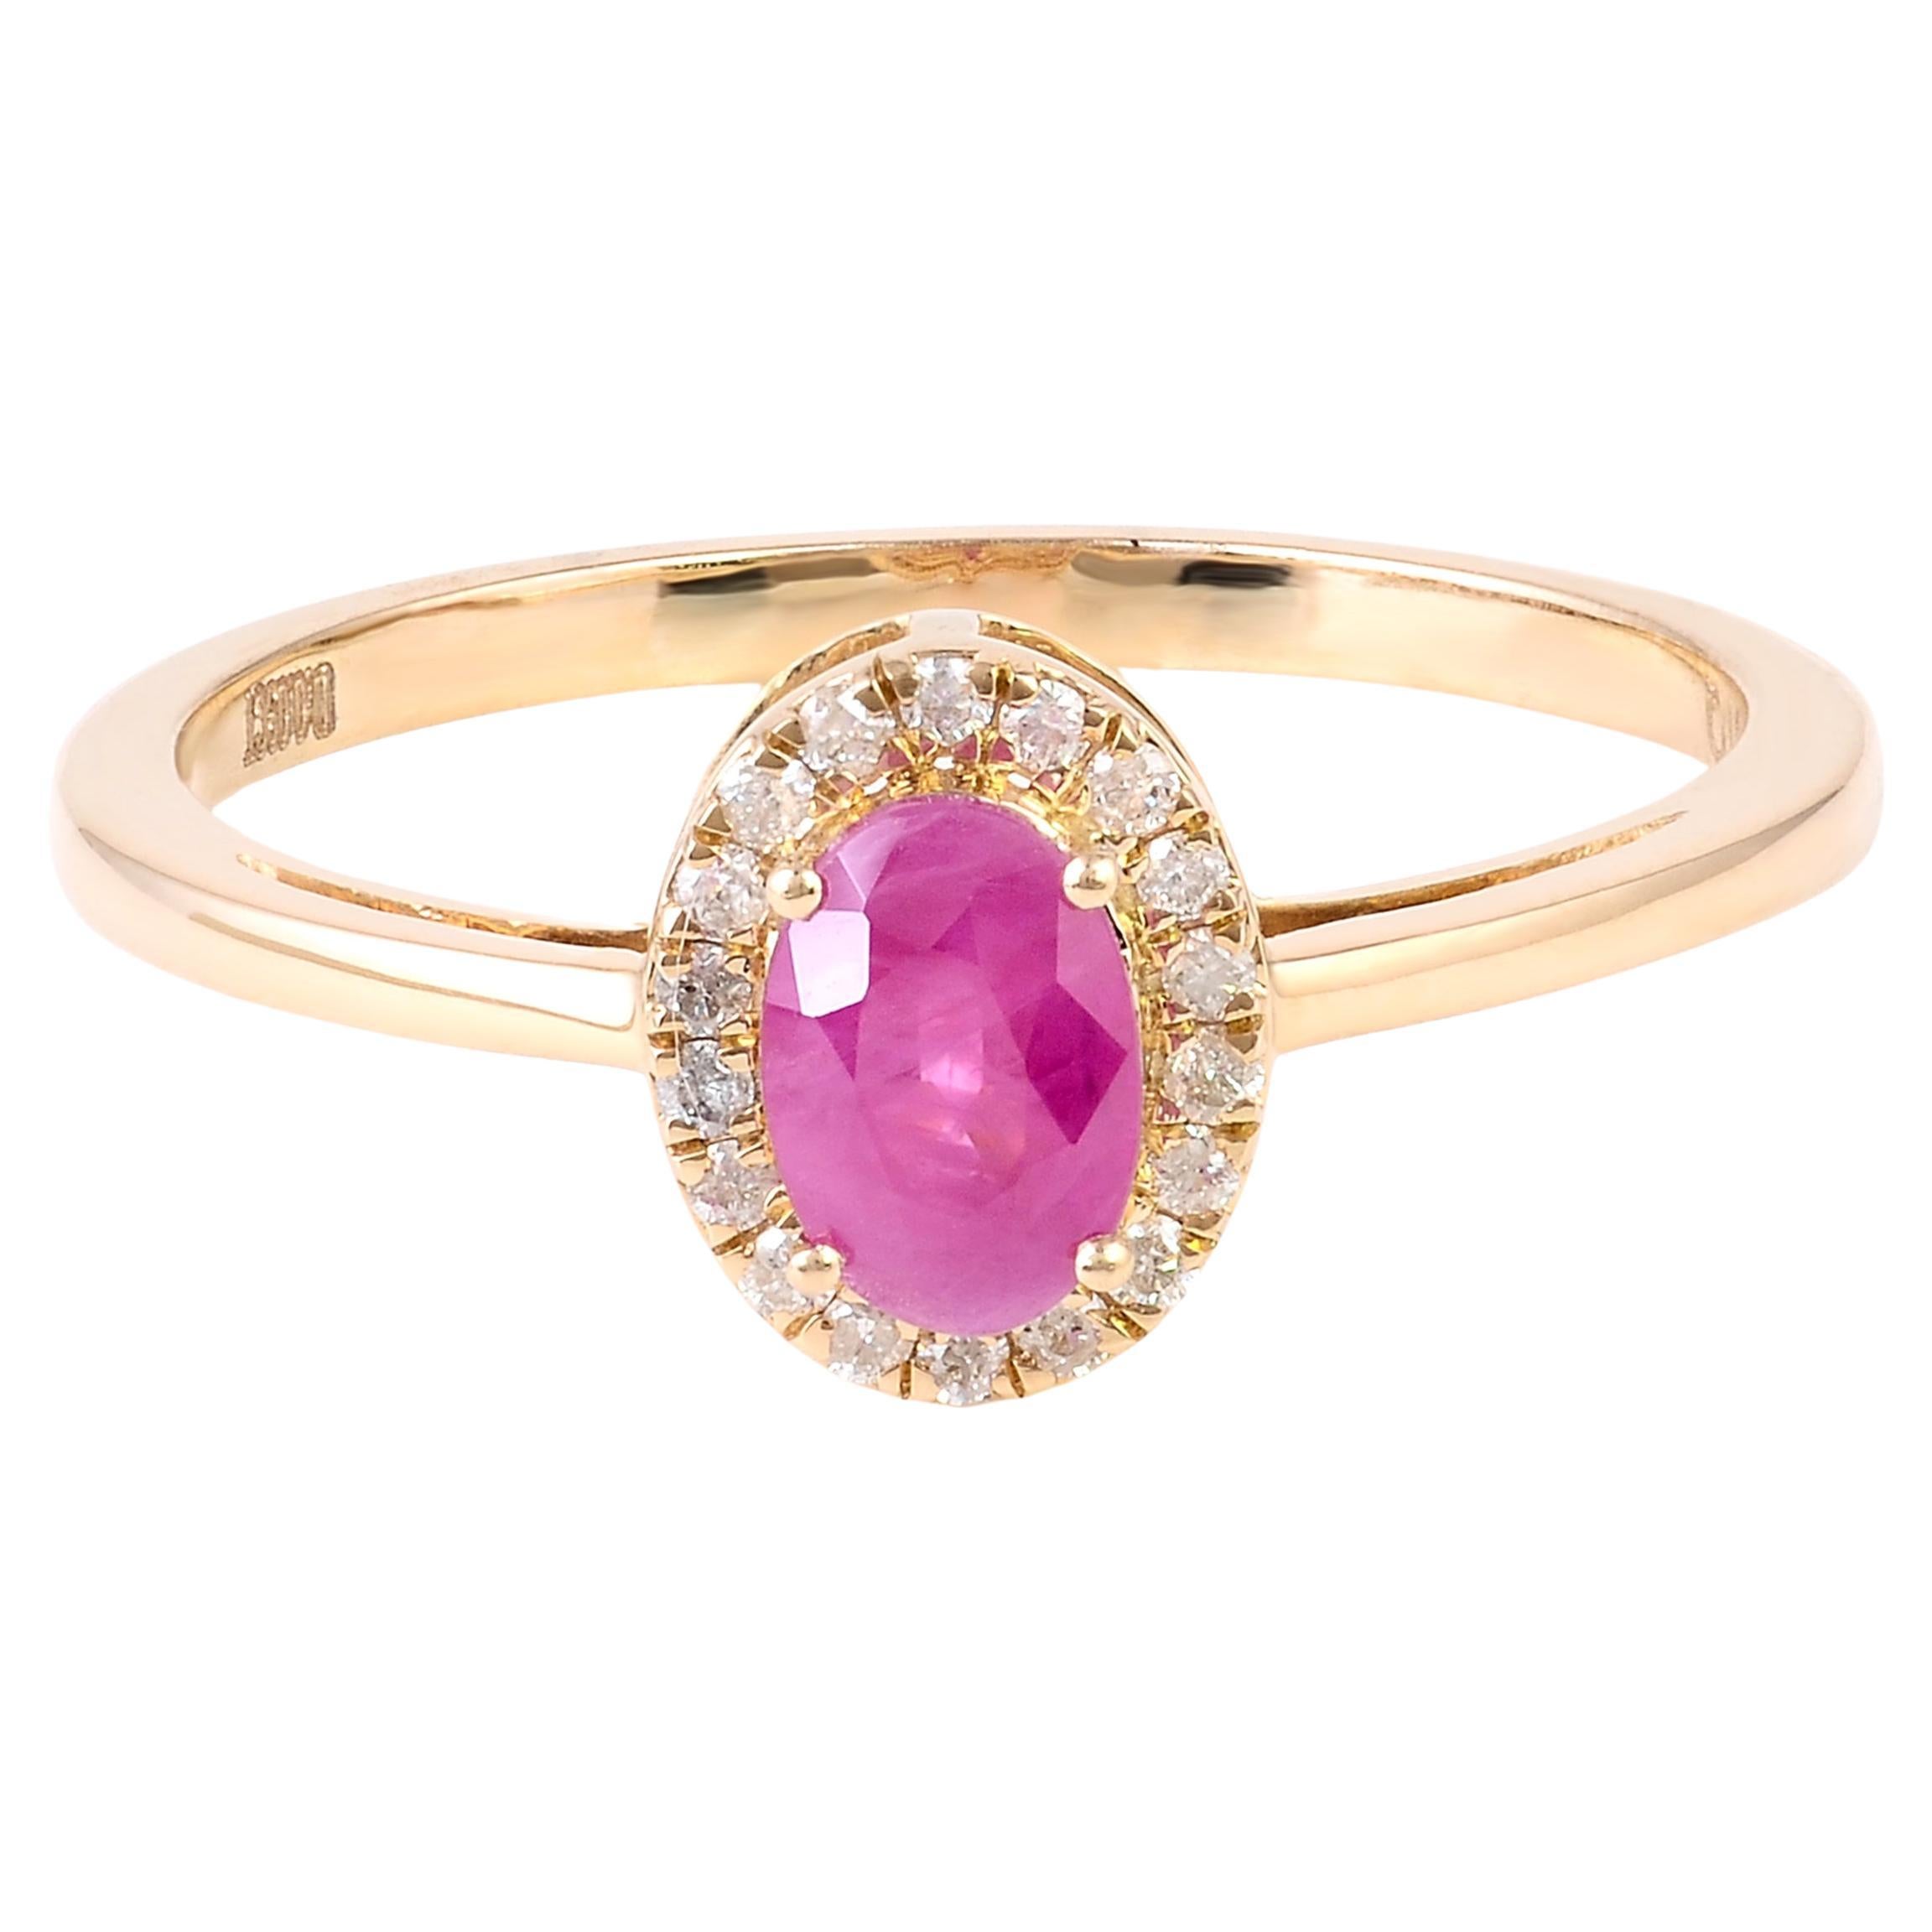 Elegant 14K Ruby & Diamond Cocktail Ring, Size 7 - Statement Jewelry Piece